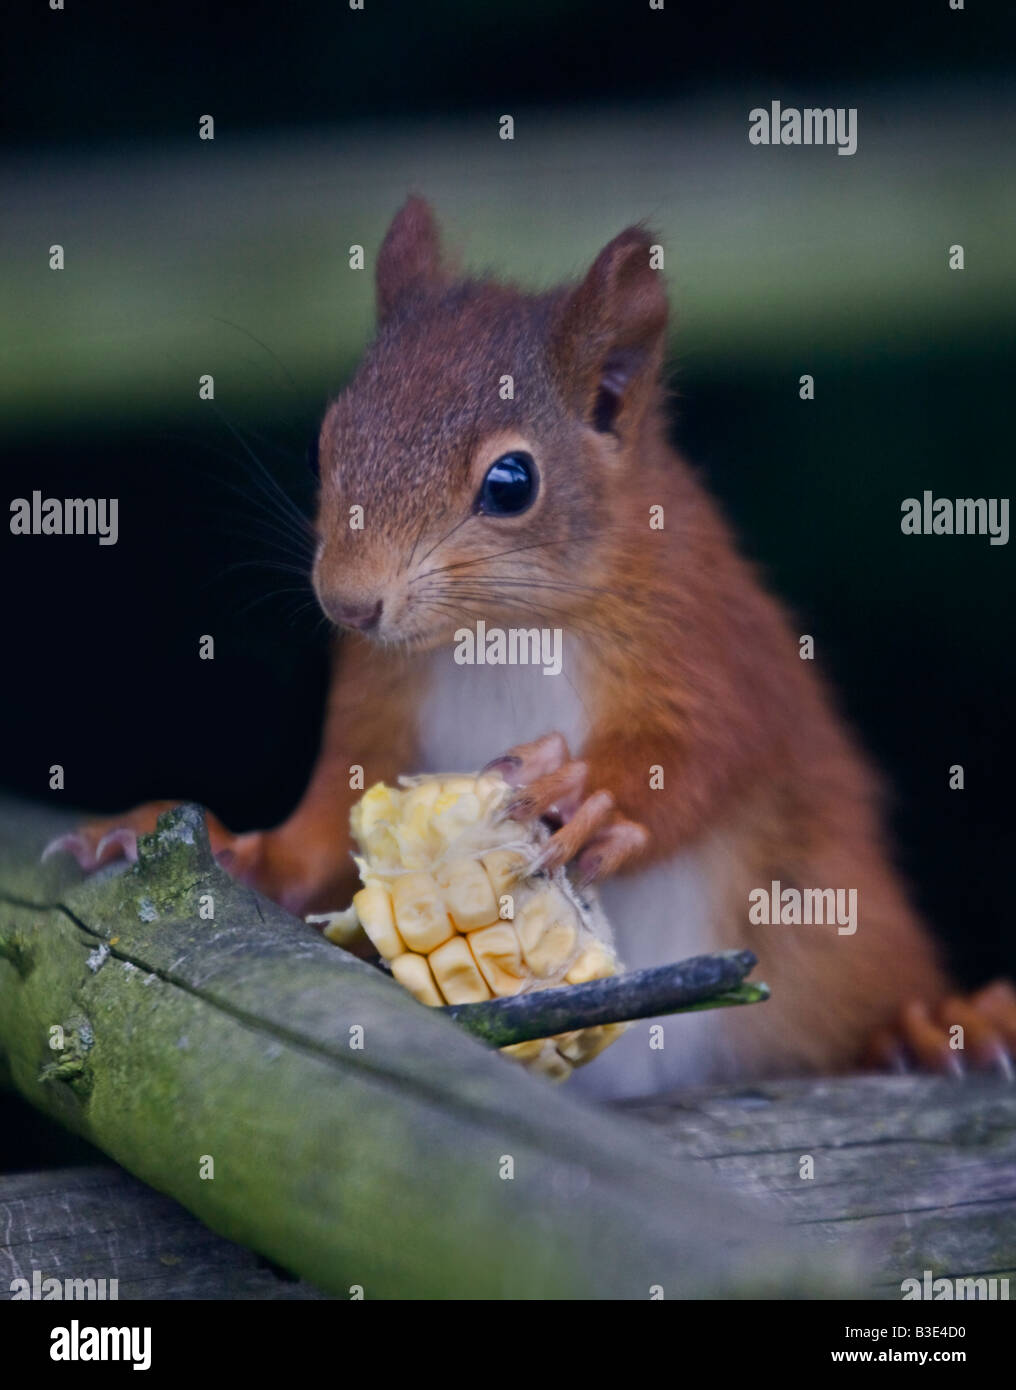 Baby Red scoiattolo (Sciurus vulgaris) con granturco dolce, REGNO UNITO Foto Stock